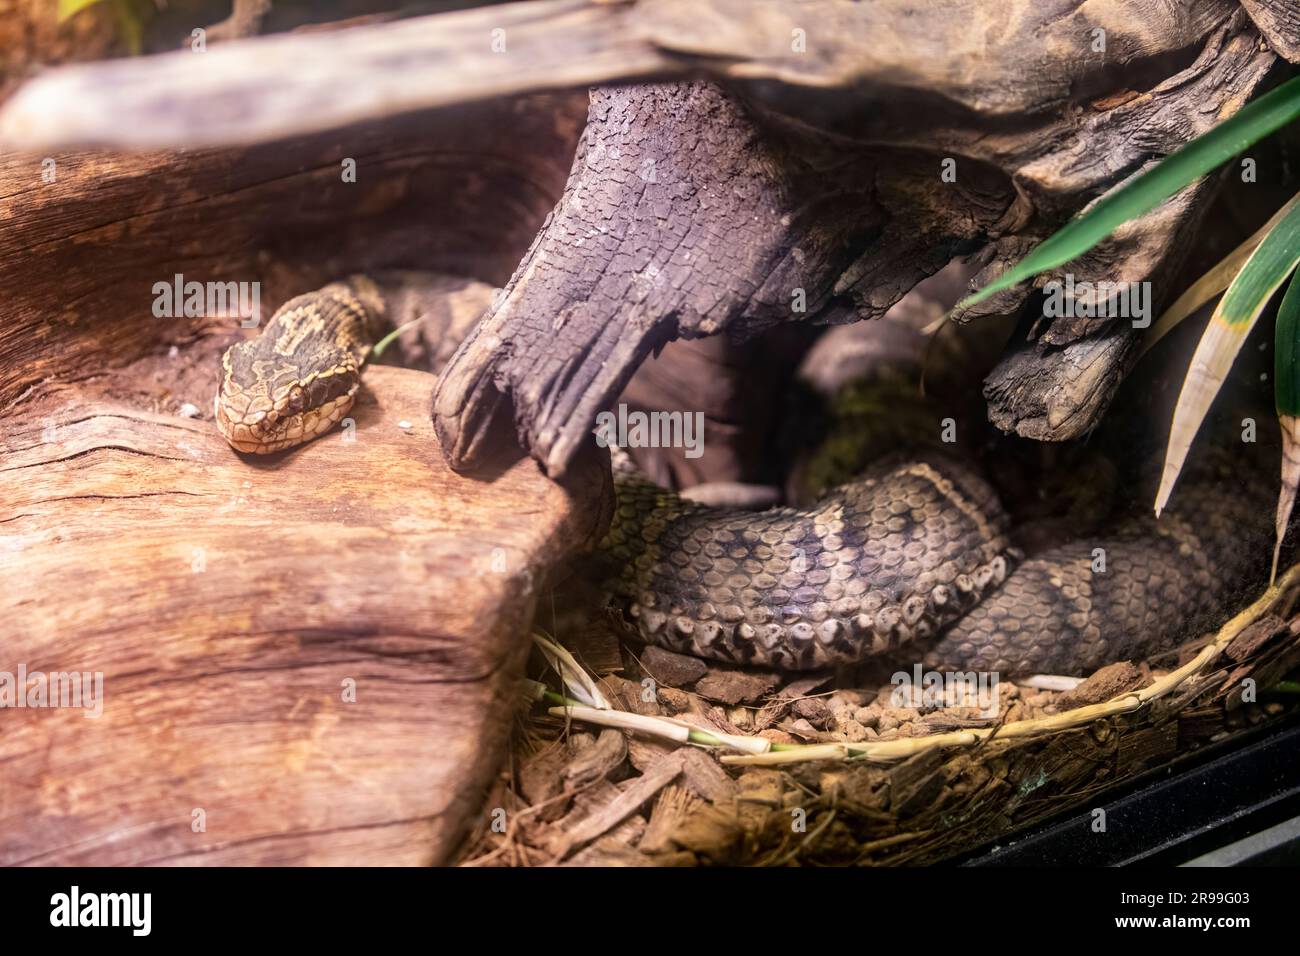 Le mamushi japonais (Gloydius blomhoffii) est une espèce de vipère venimeuse trouvée au Japon. Un des serpents les plus venimeux du Japon. Banque D'Images